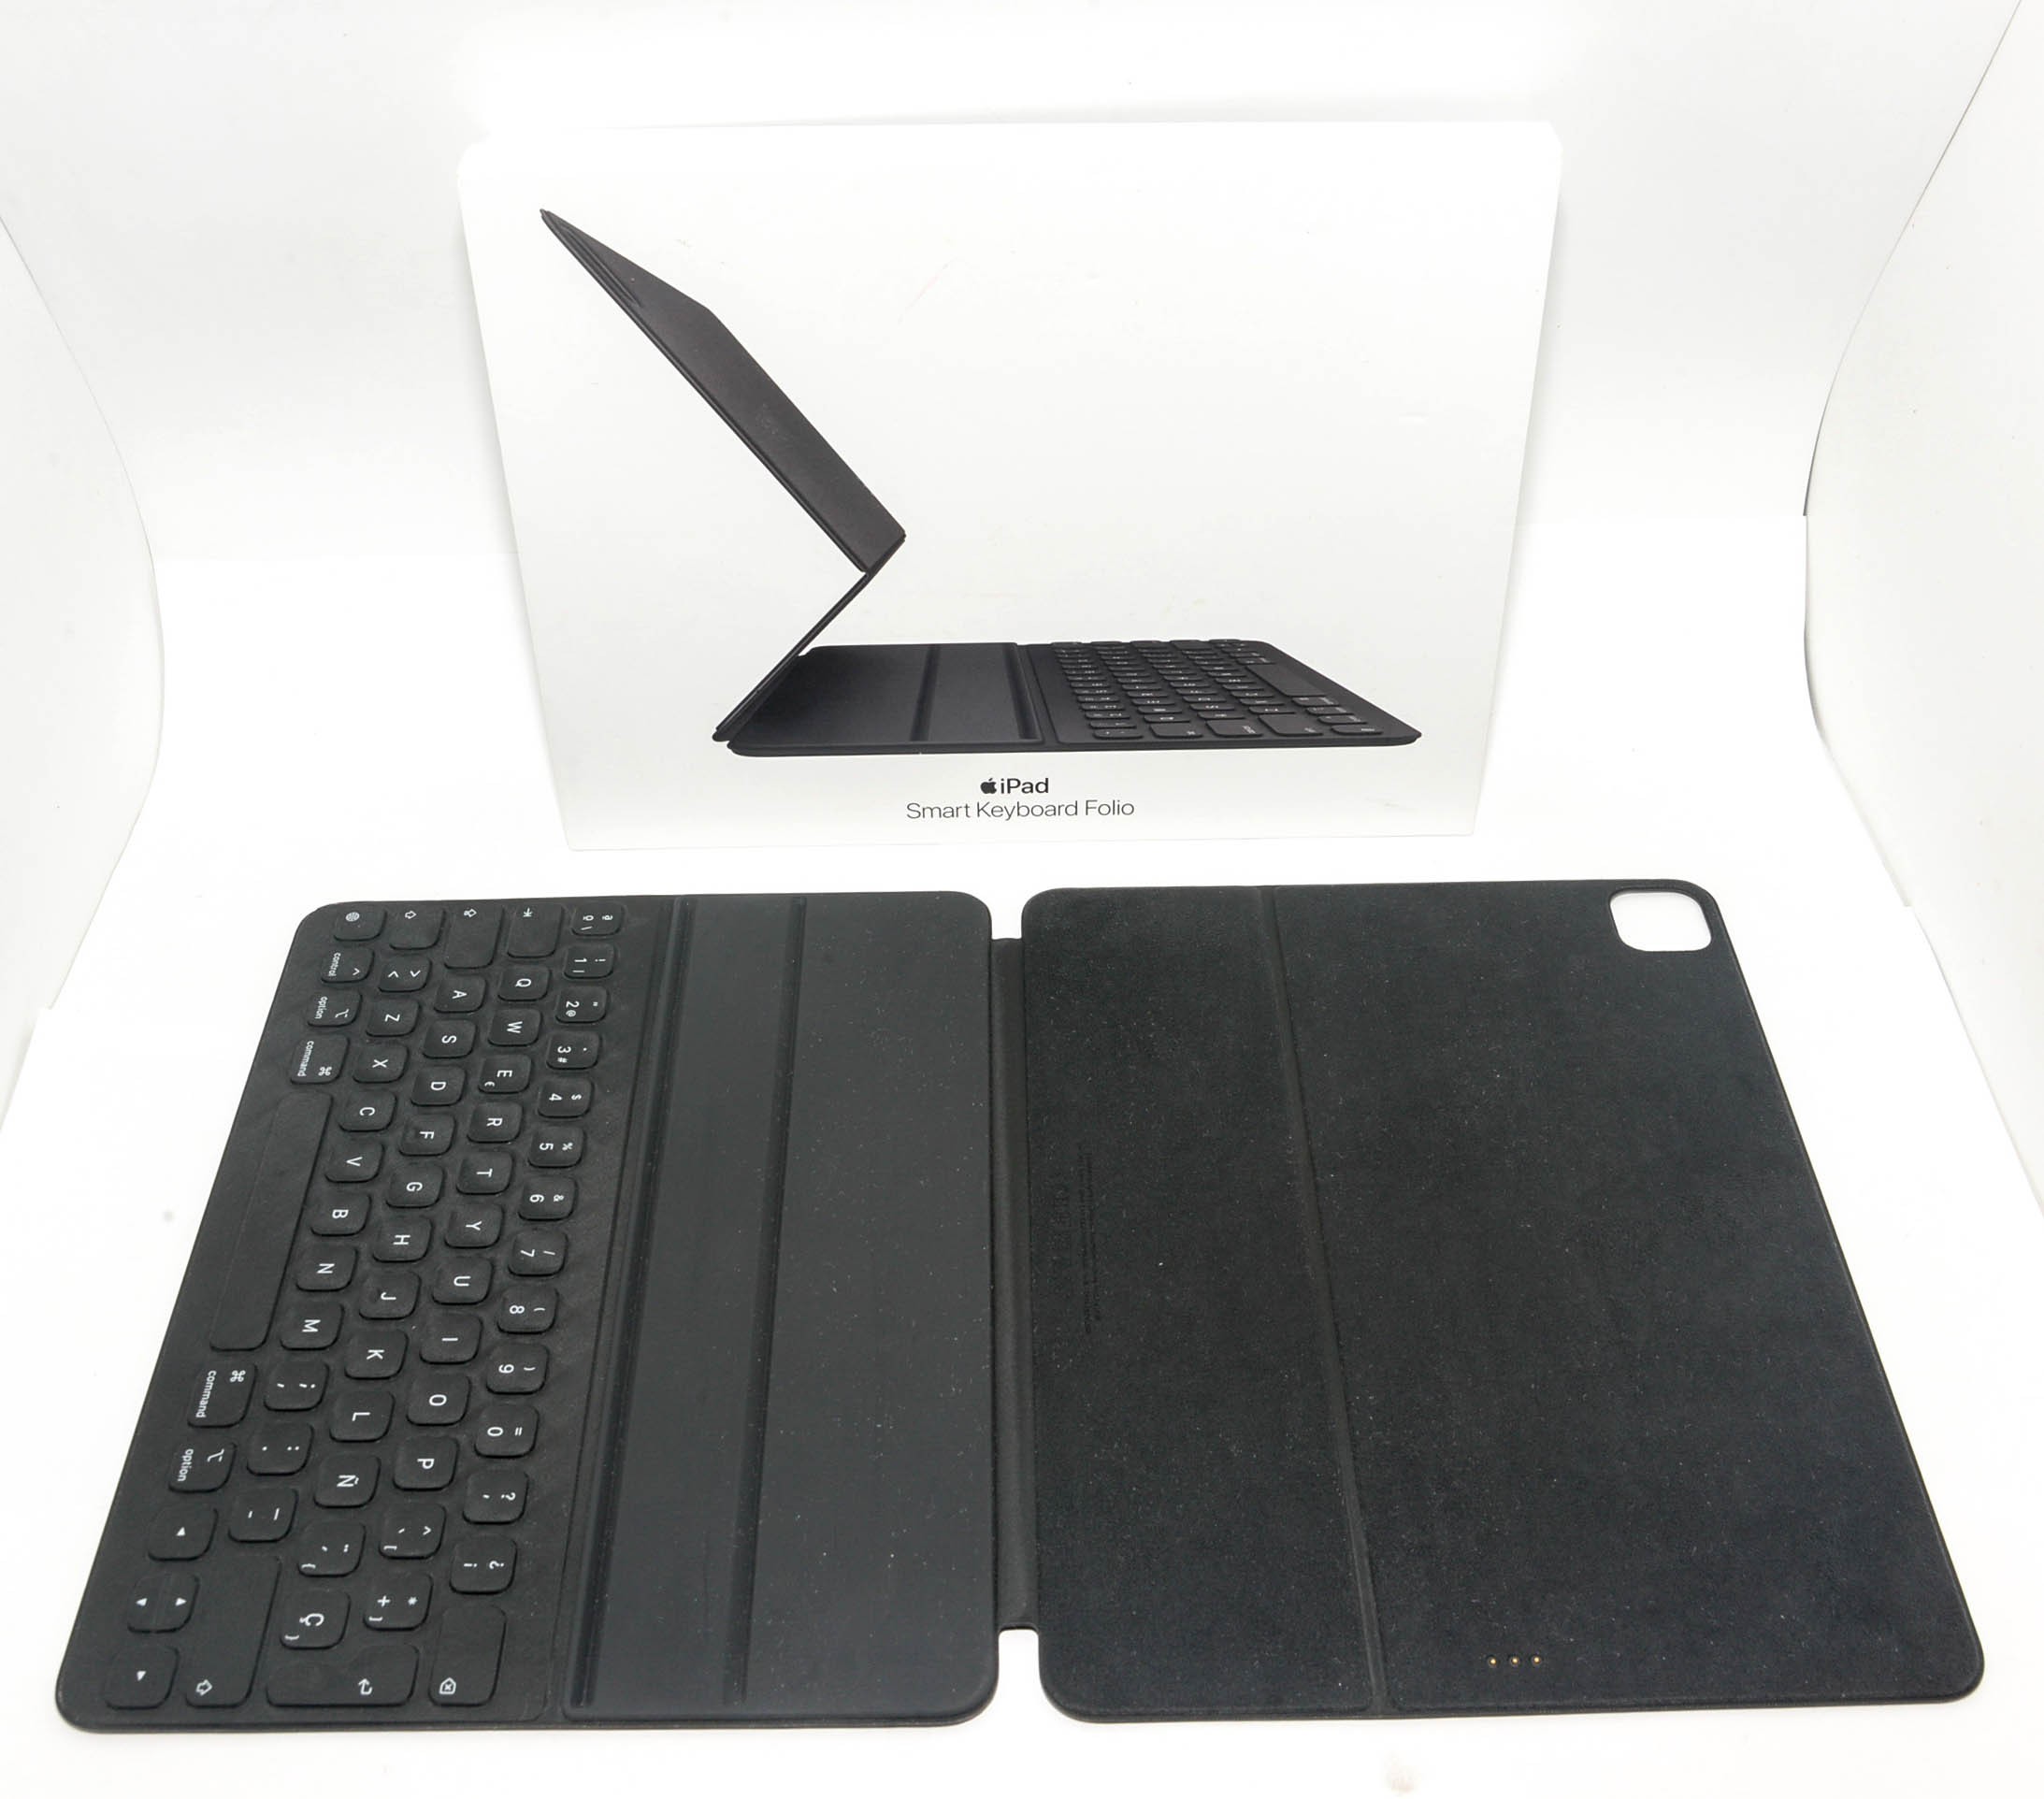 iPadケース12.9インチiPad Pro(第3世代) スマートキーボードフォリオ 日本語